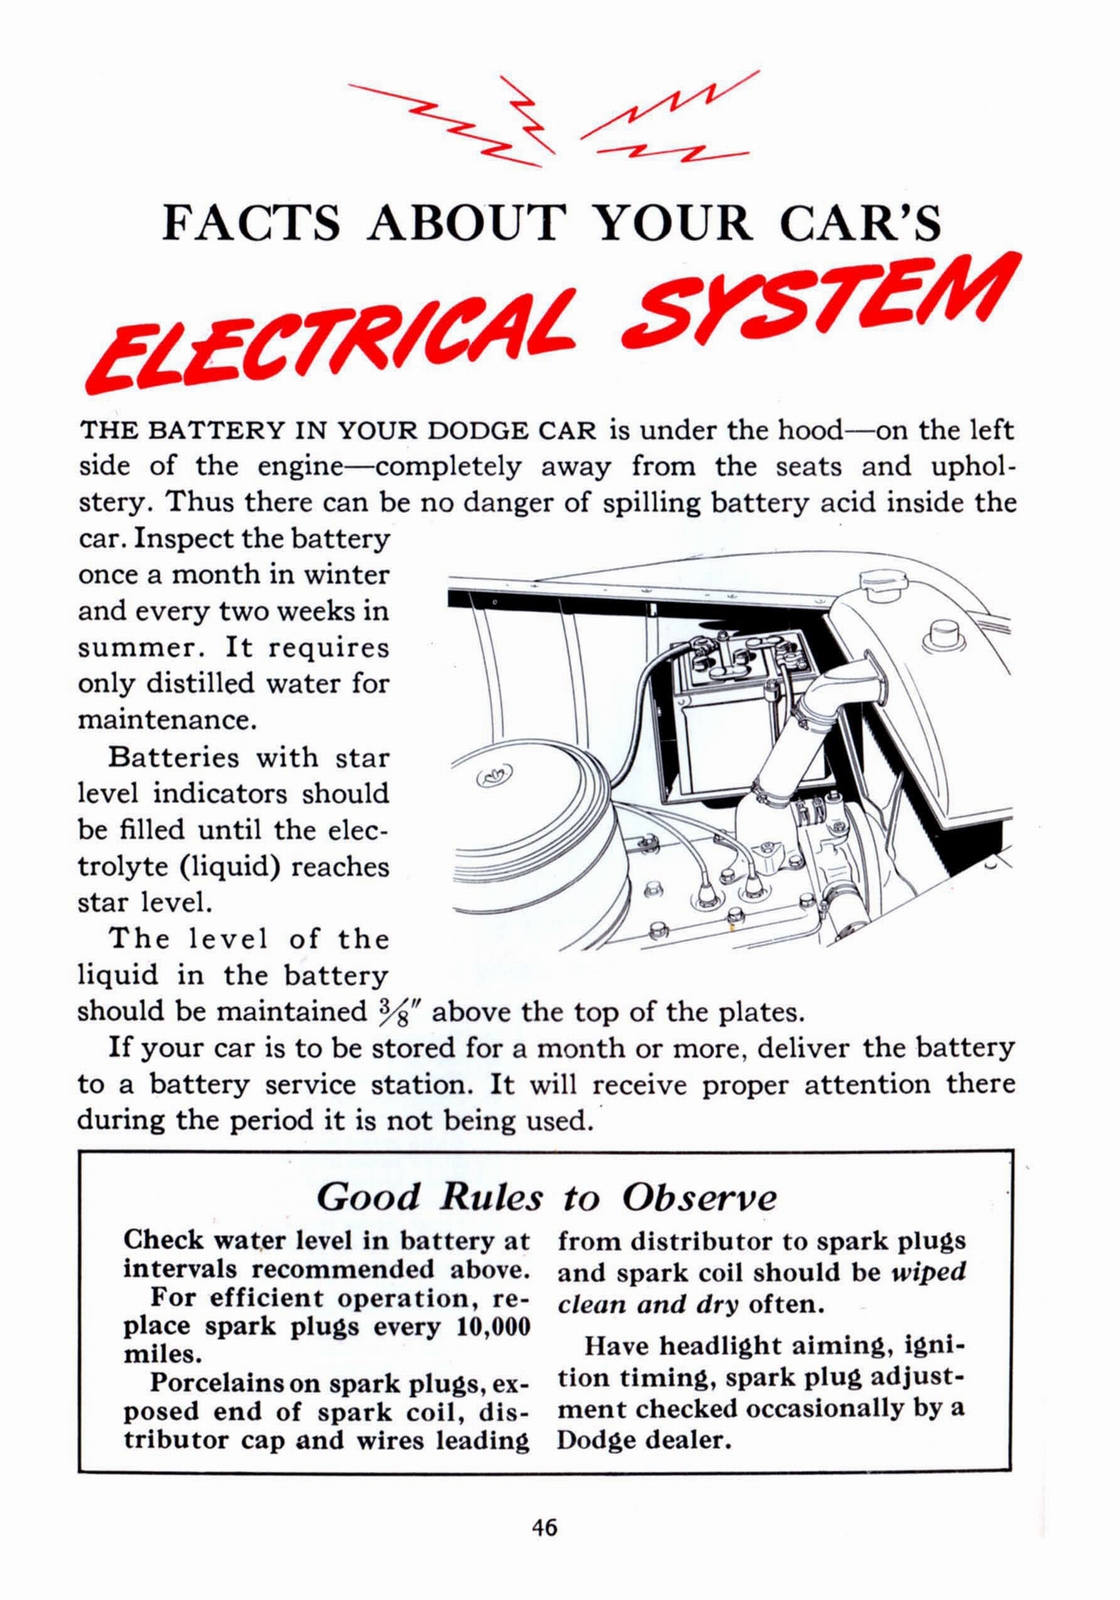 n_1941 Dodge Owners Manual-46.jpg